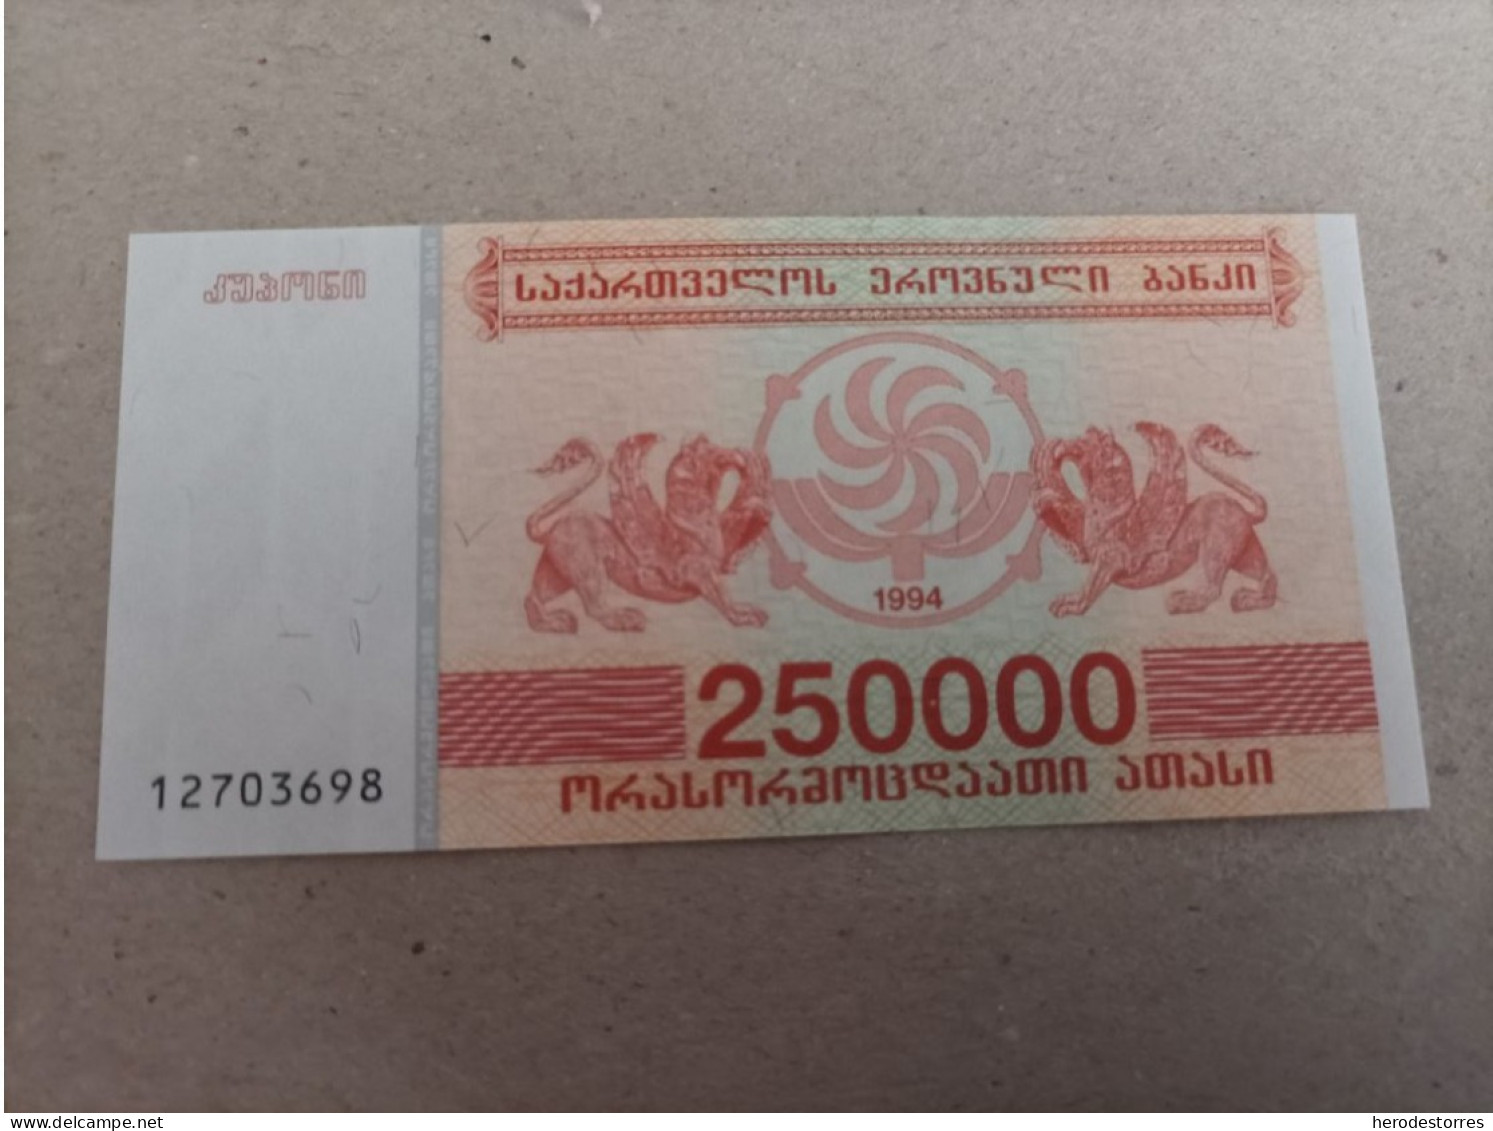 Billete De Georgia De 250000 Laris, Año 1994, UNC - Georgia